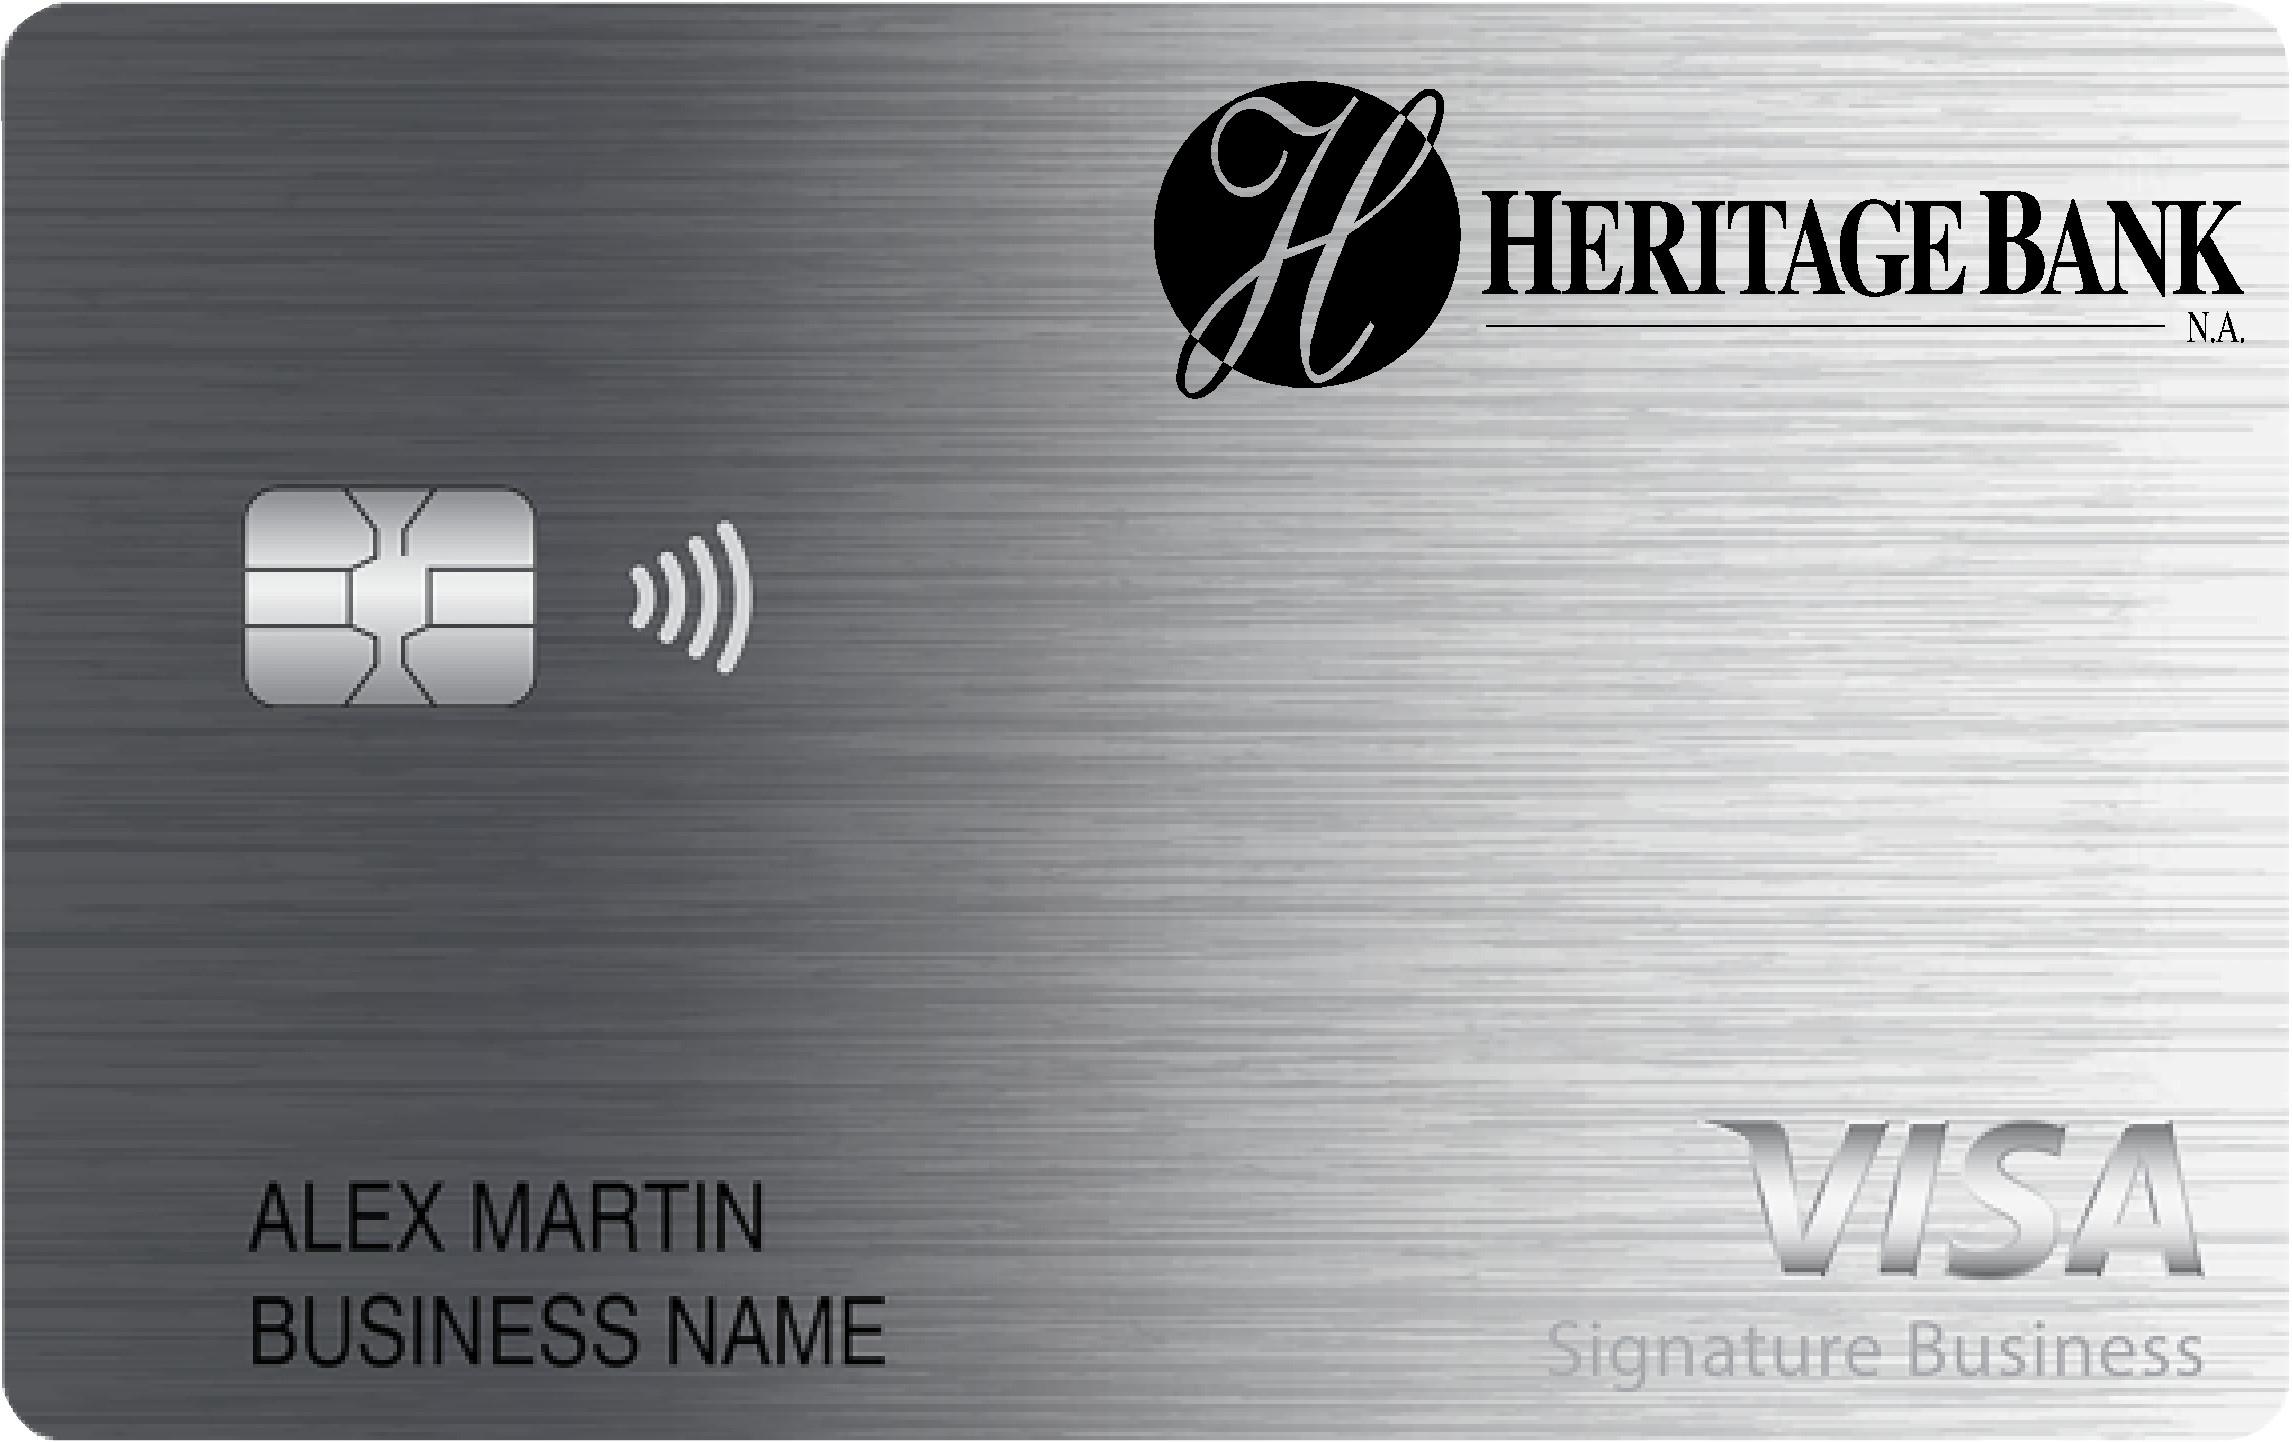 Heritage Bank Smart Business Rewards Card